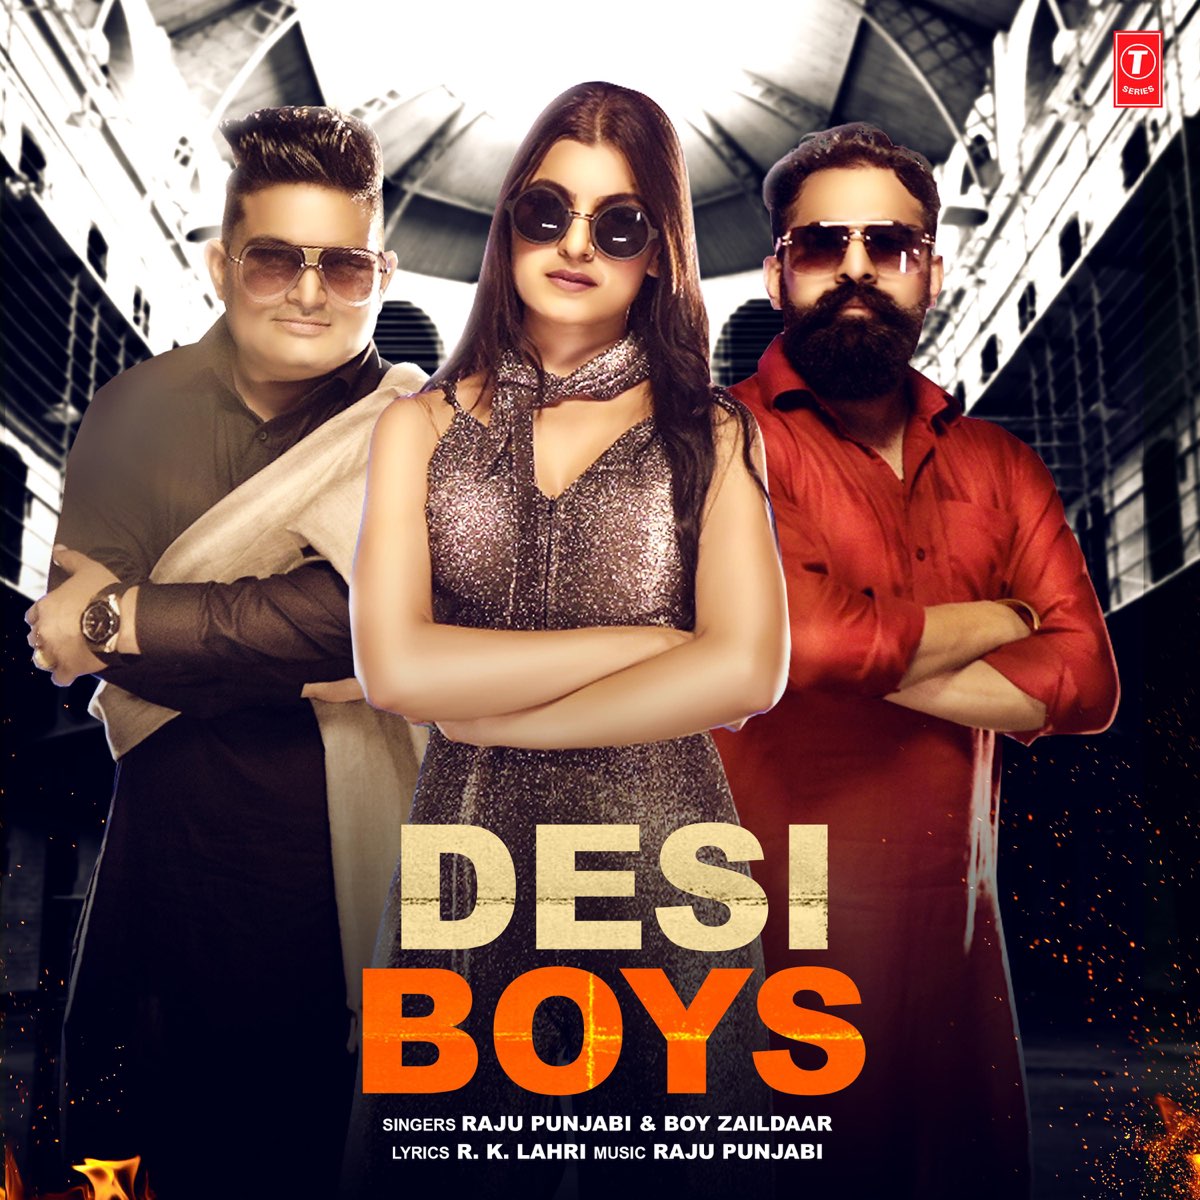 Desi Boys - Single by Raju Punjabi & Boy Zaildaar on Apple Music